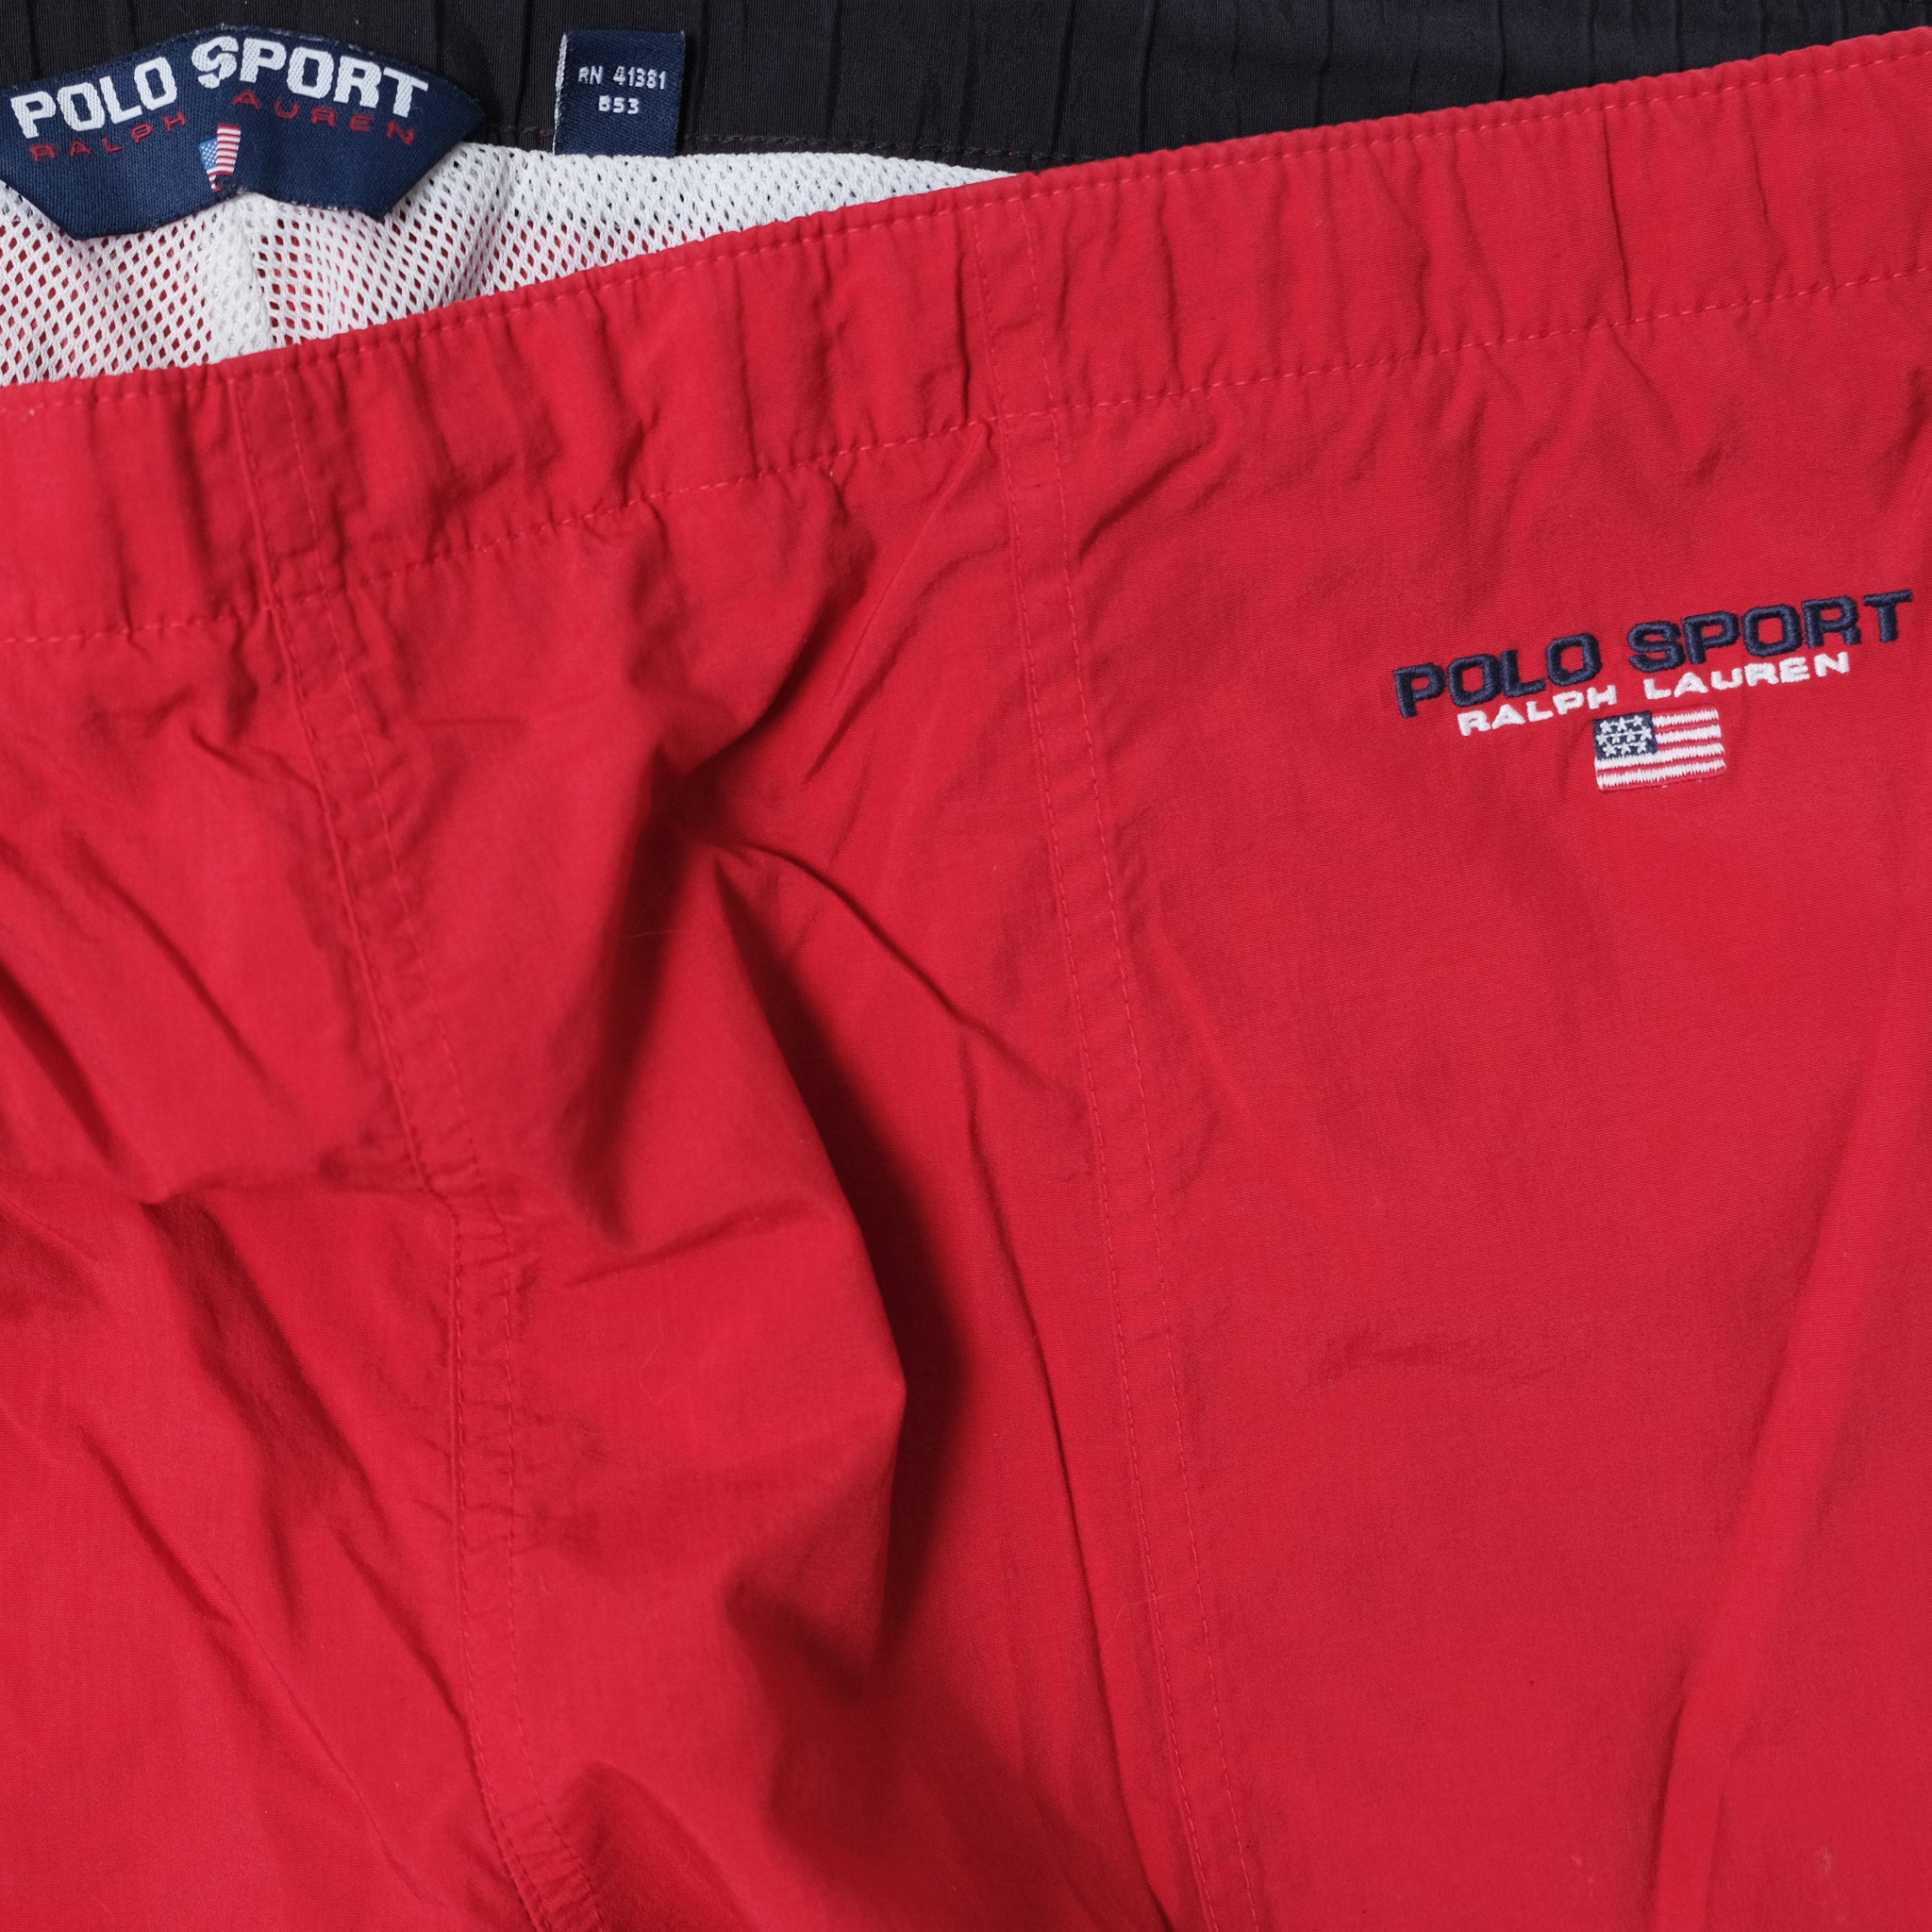 Vintage Polo Sport Track Pants Medium / Large